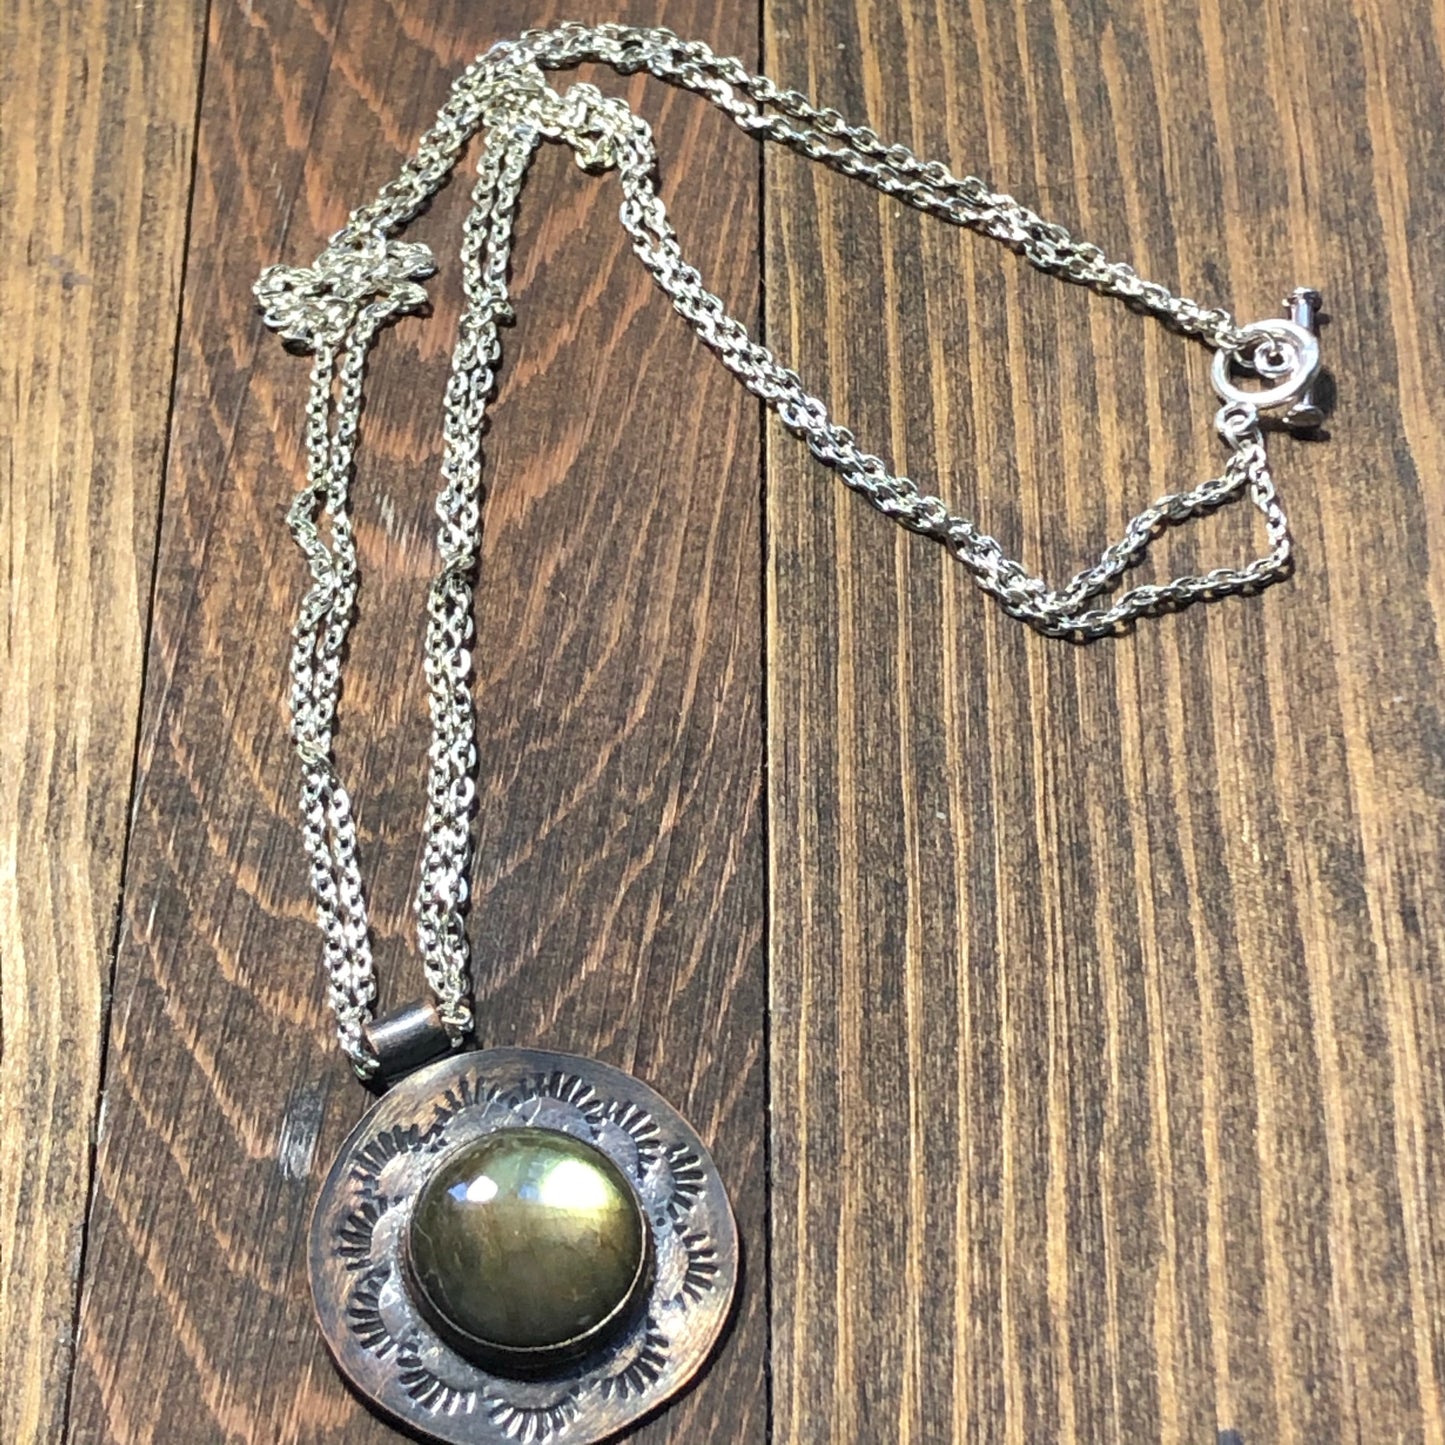 Copper and Labradorite pendant